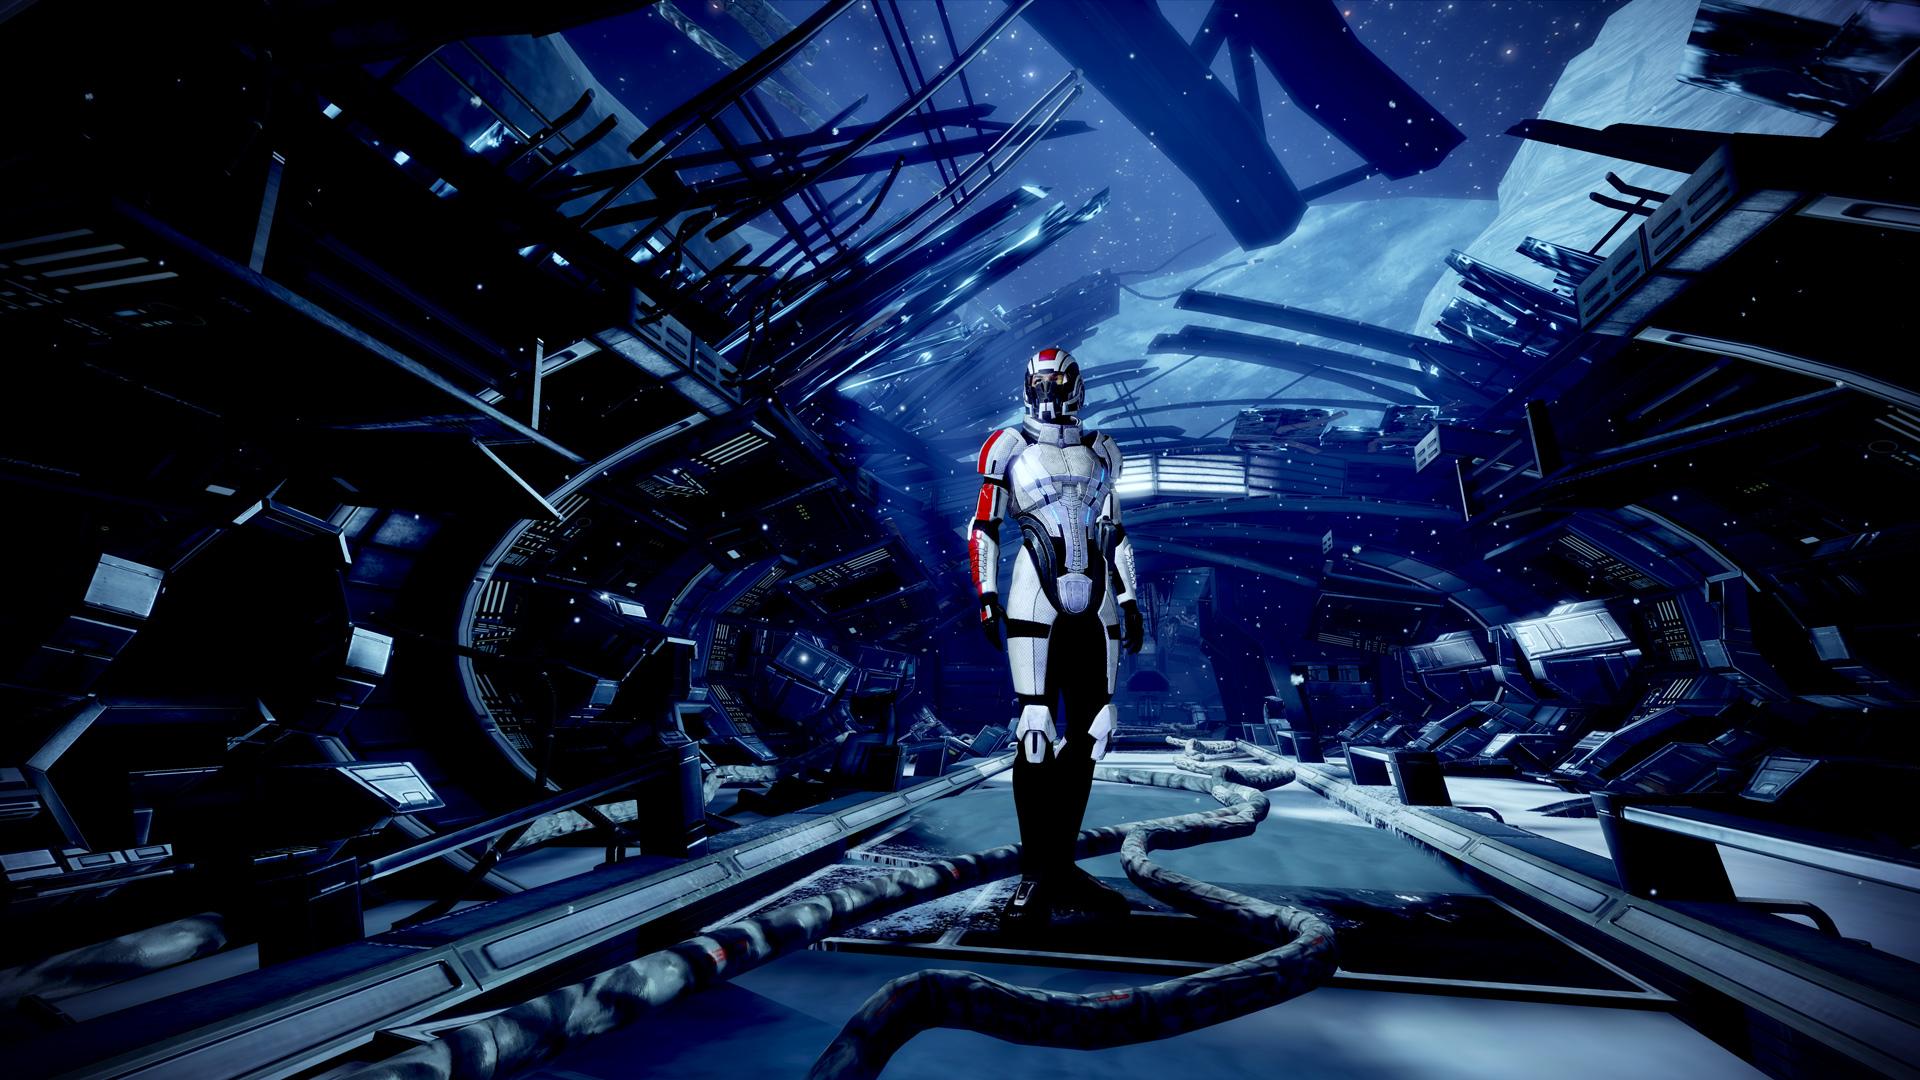 Normandy Wallpaper - Mass Effect 1 Wallpaper Normandy , HD Wallpaper & Backgrounds